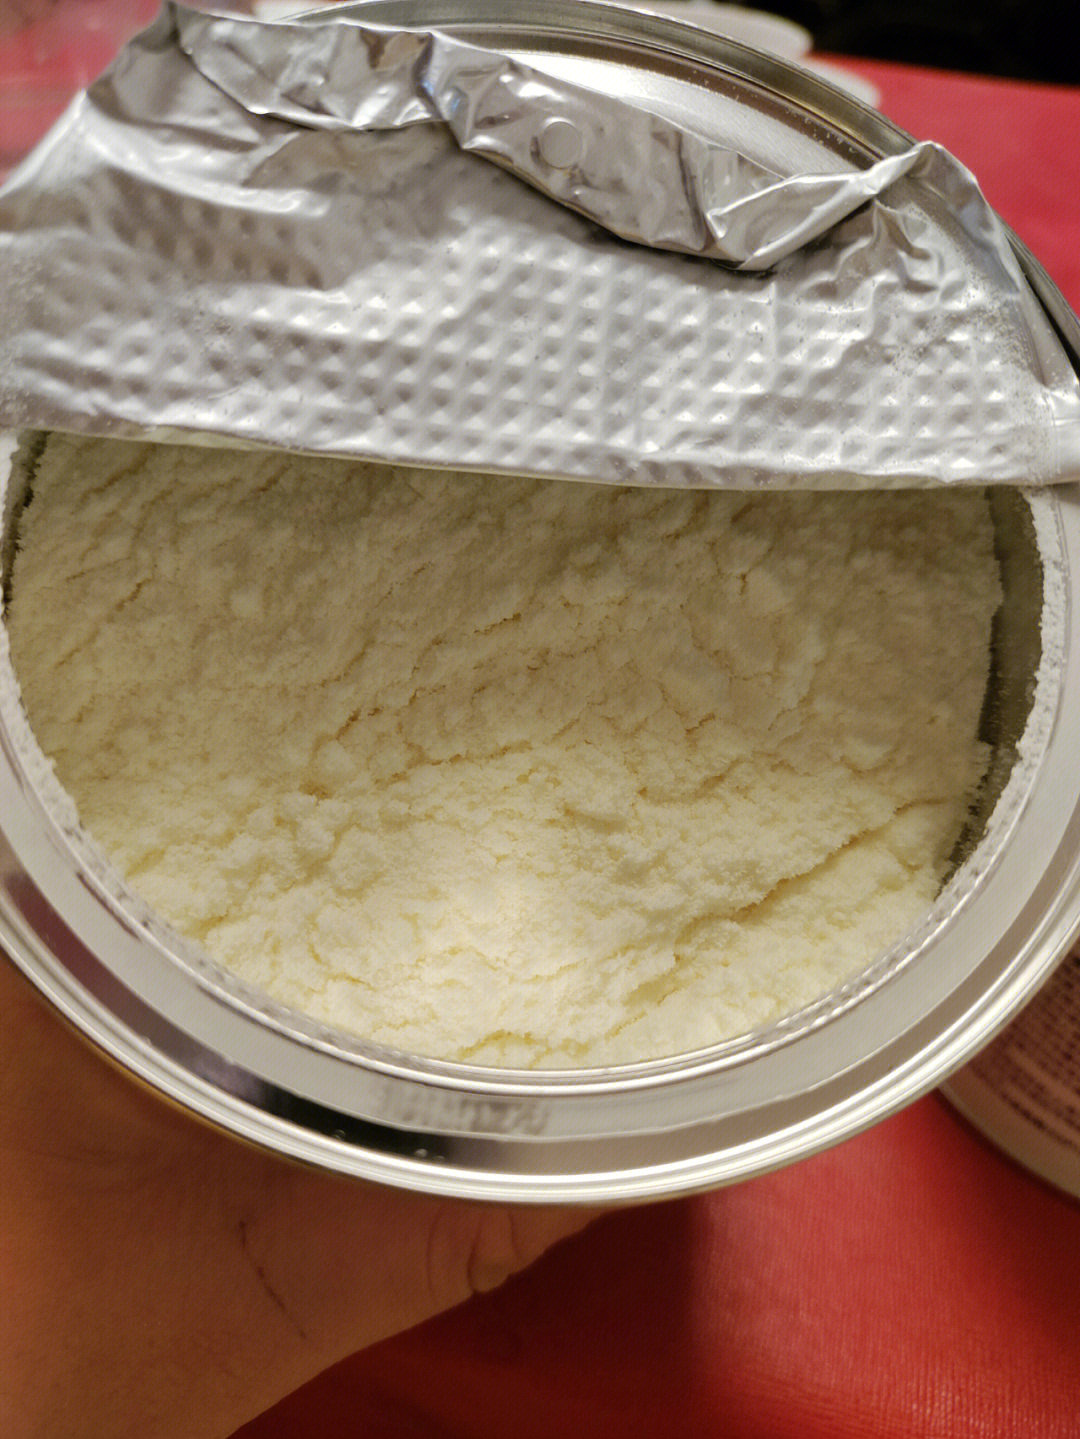 氨基酸奶粉正常大便图片氨基酸奶粉颜色和普通奶粉不一样和氨基酸奶粉